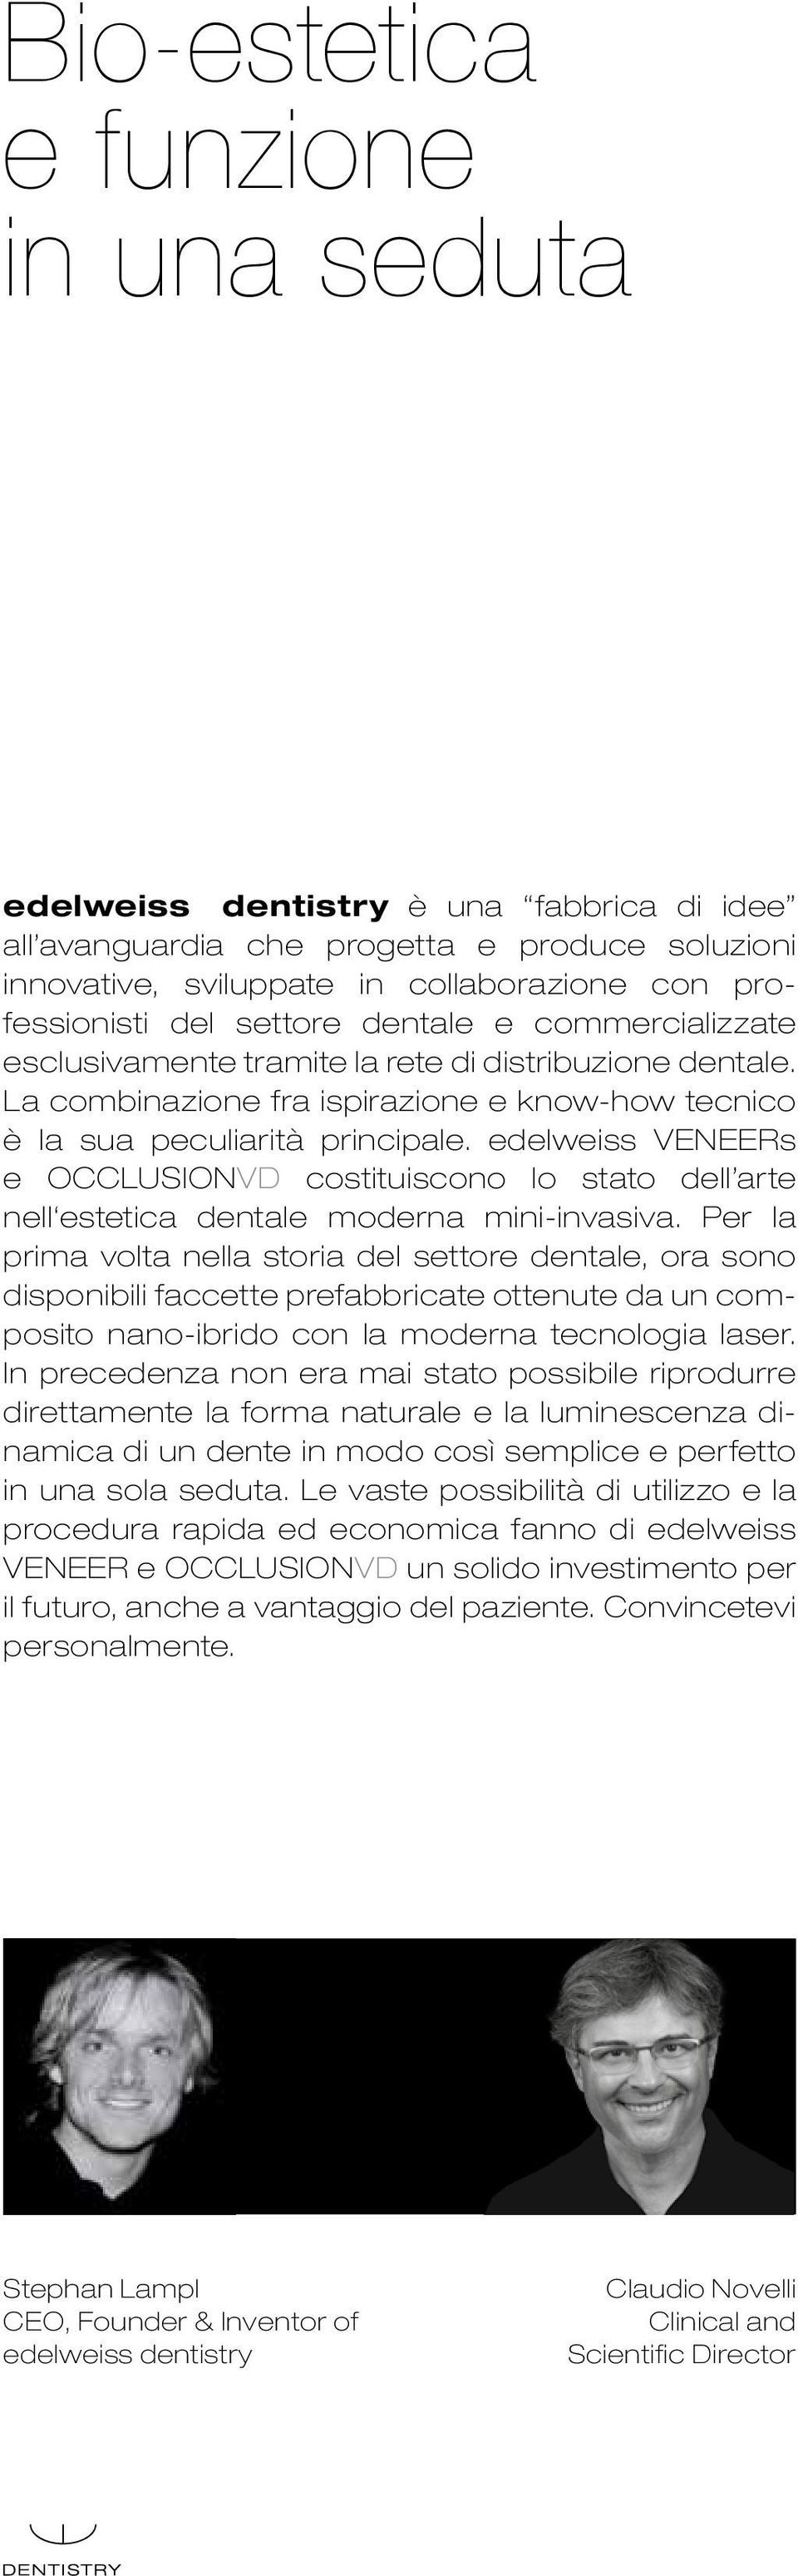 edelweiss VENEERs e OCCLUSIONVD costituiscono lo stato dell arte nell estetica dentale moderna mini-invasiva.